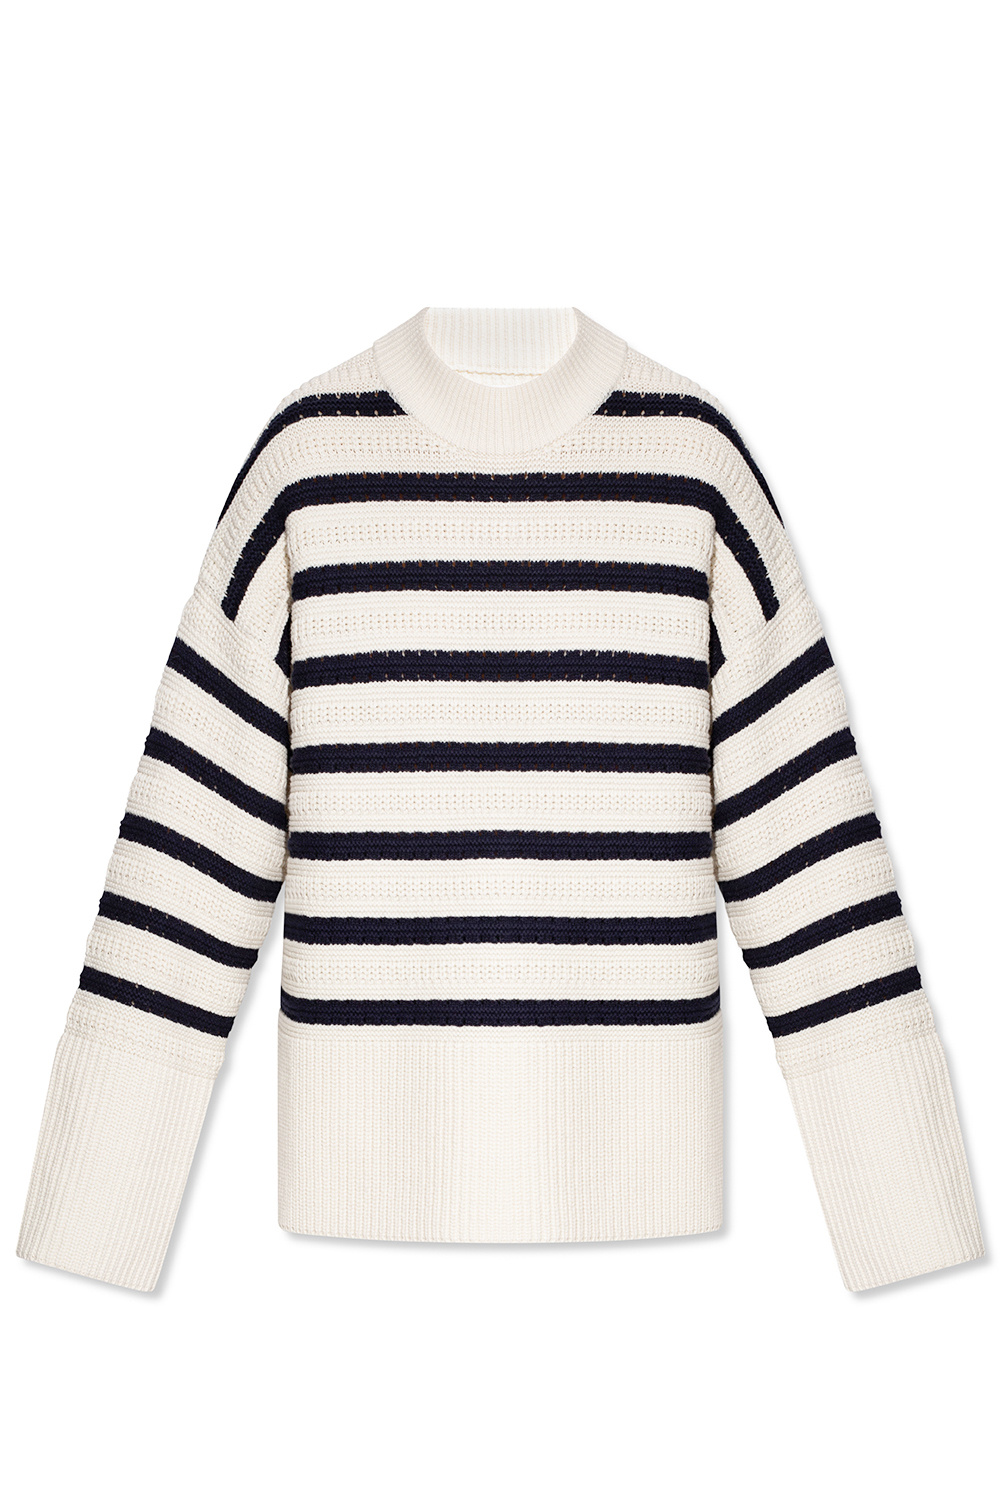 Samsøe Samsøe ‘Raili’ striped sweater